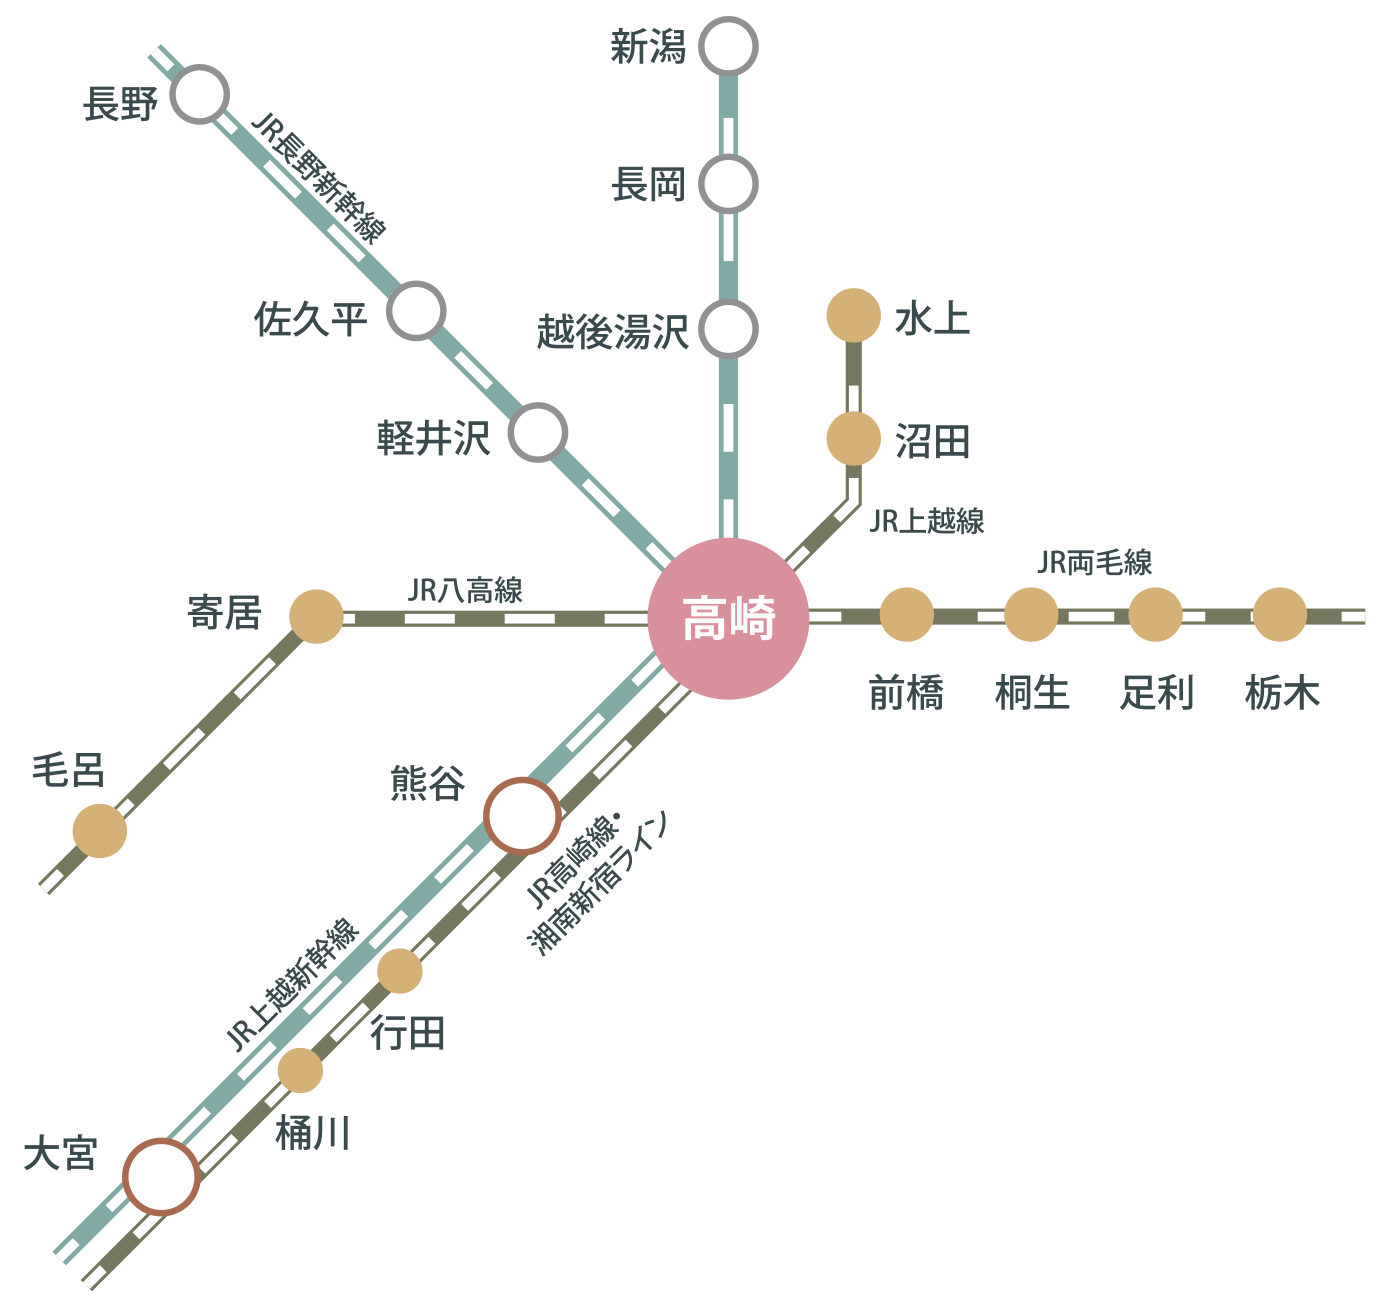 電車でのアクセス方法のマップ